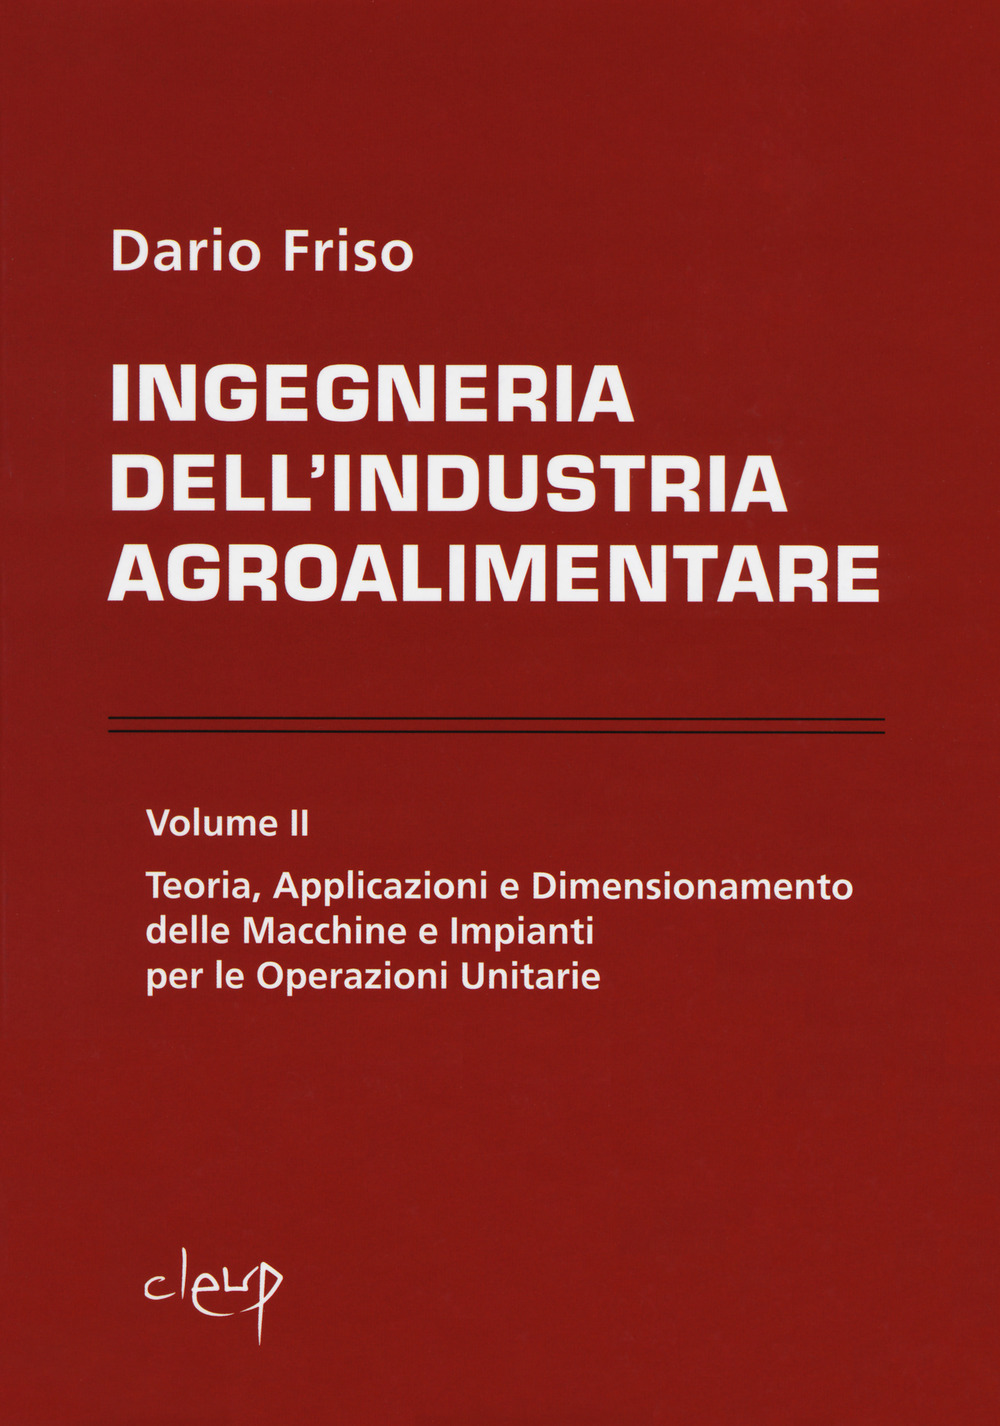 Image of Ingegneria dell'industria agroalimentare. Vol. 2: Teoria, applicazioni e dimensionamento delle macchine e impianti per le operazioni unitarie.